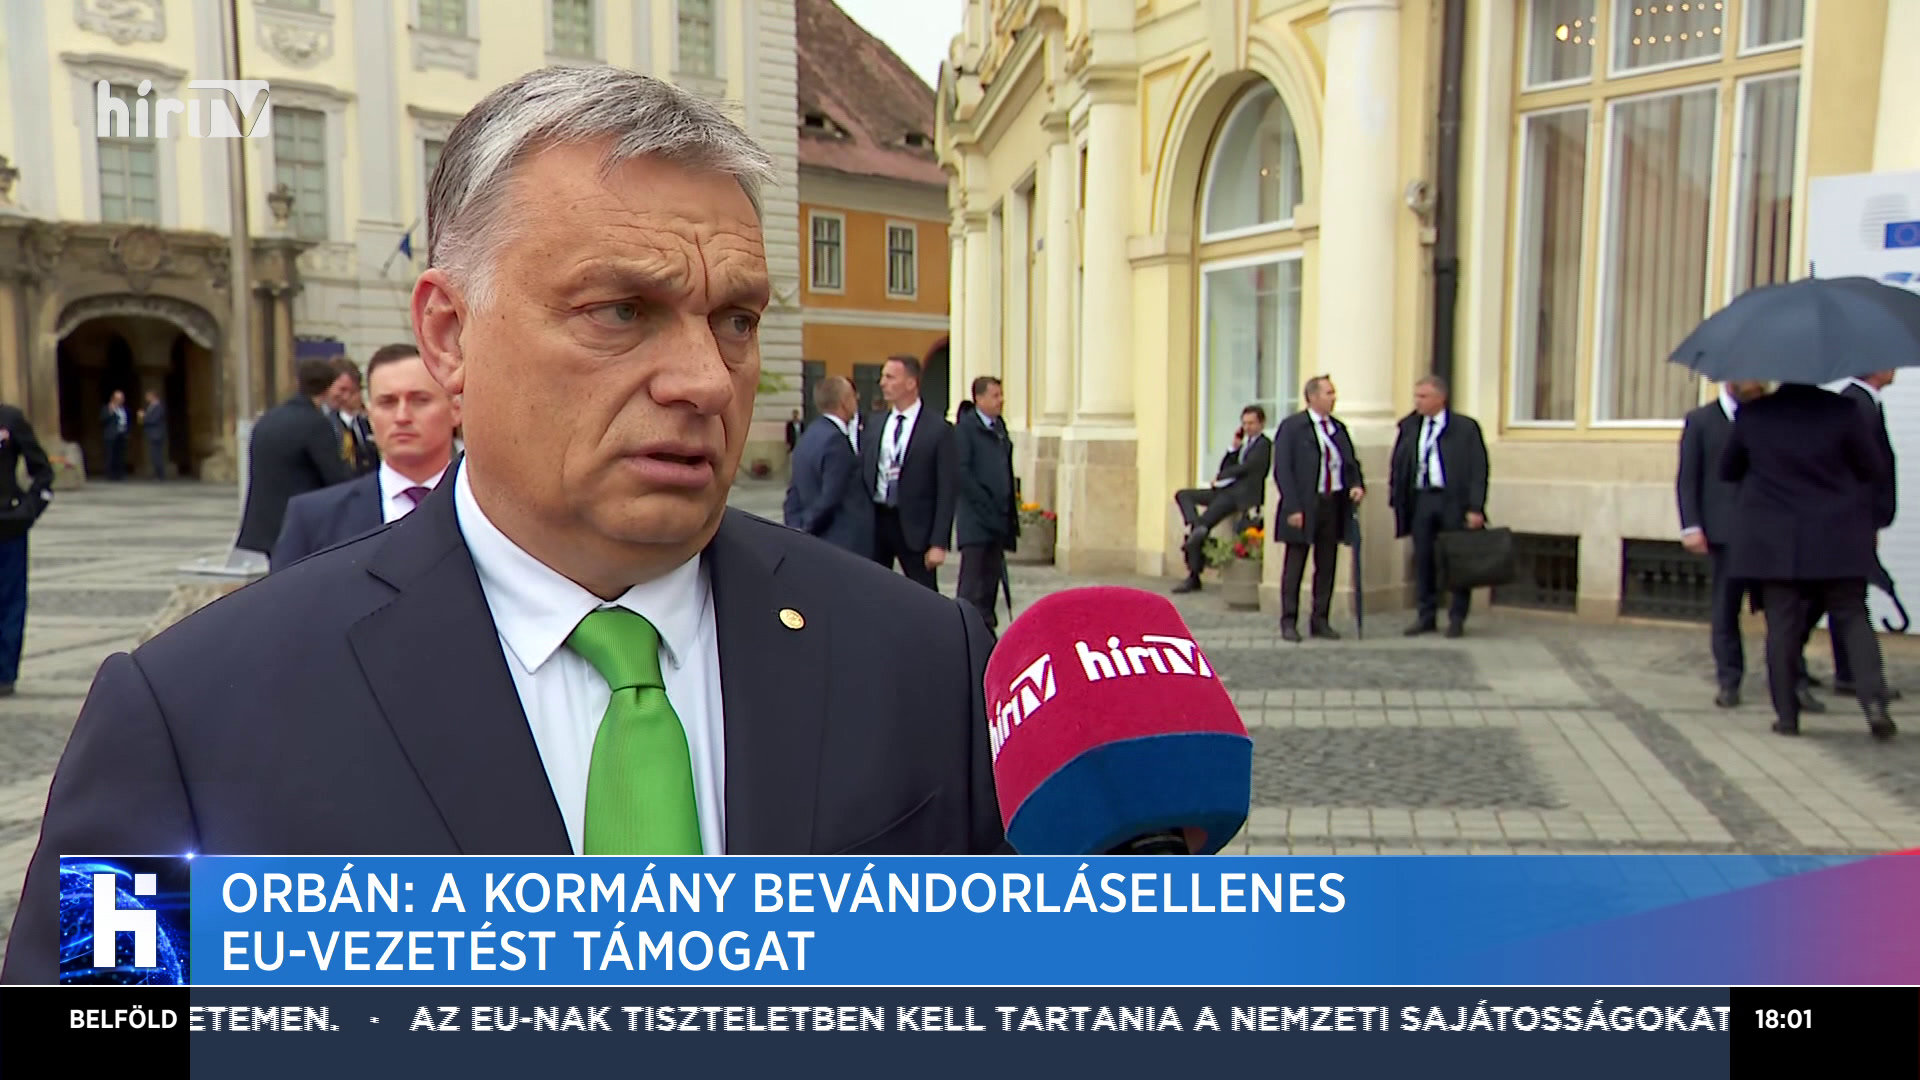 Orbán Viktor: A magyar kormány csak bevándorlásellenes EU-vezetést támogat